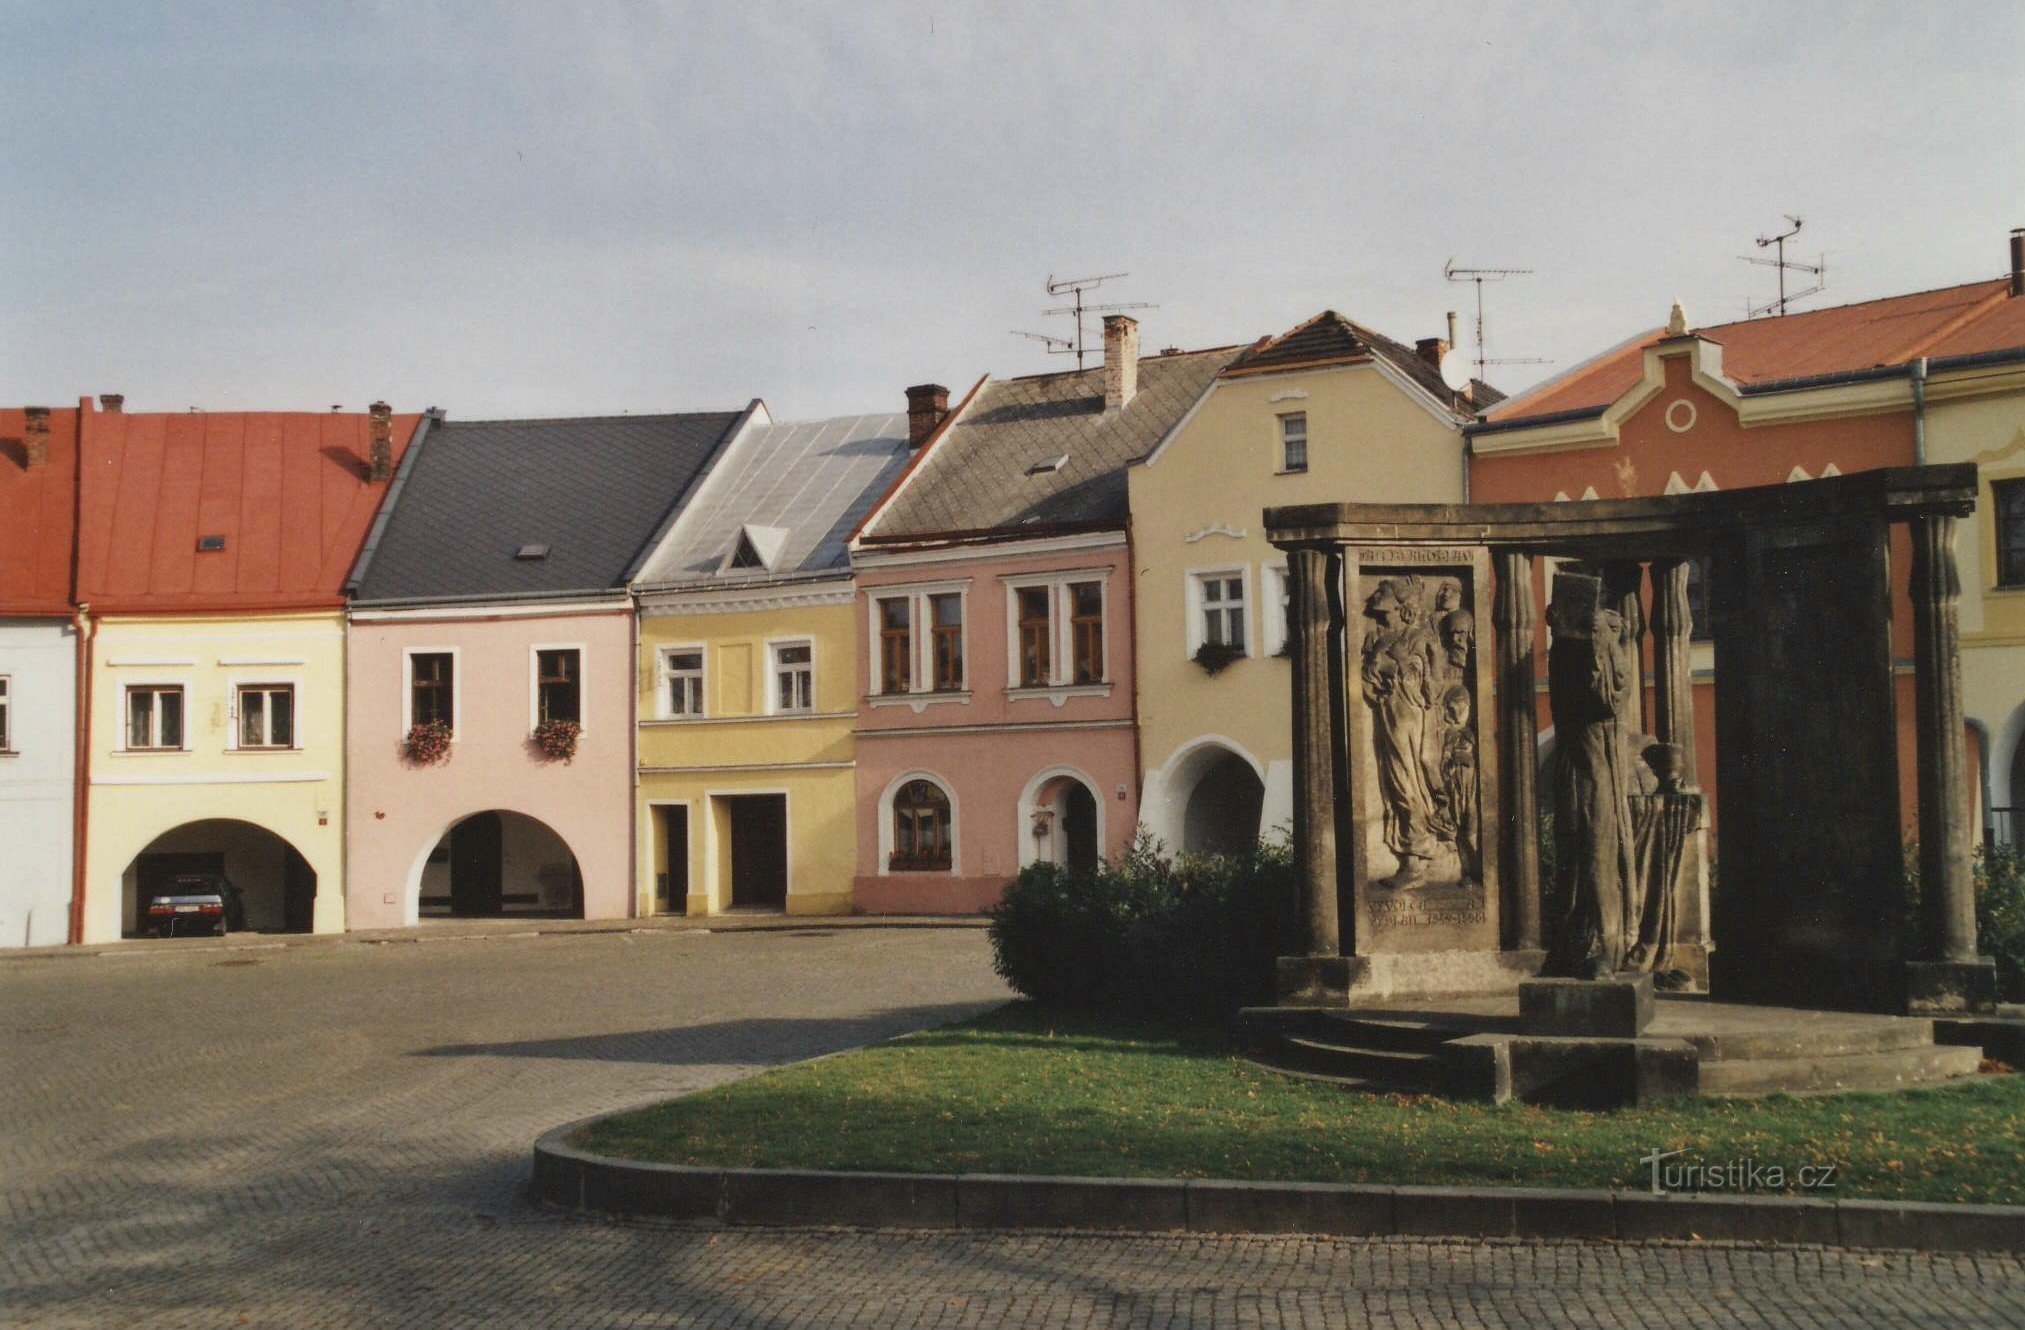 Верхняя площадь и памятник Яну Благославу с Кралицкой Библией